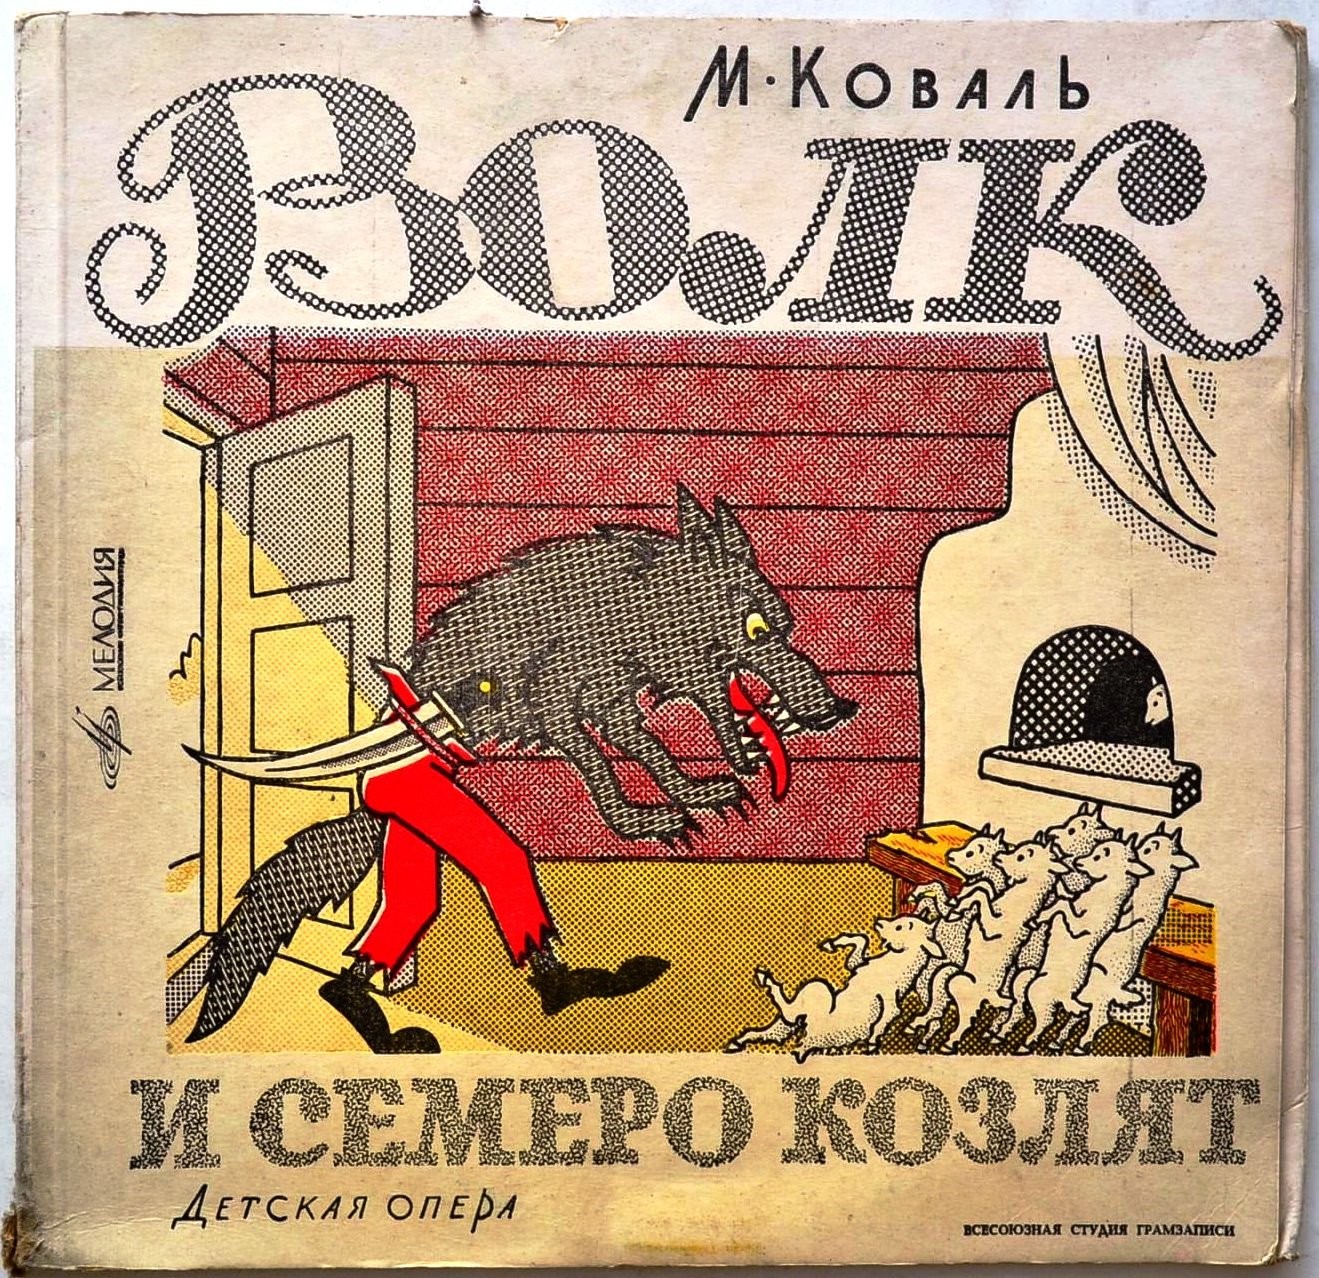 М. КОВАЛЬ (1907-1971) «Волк и семеро козлят»: опера для детей